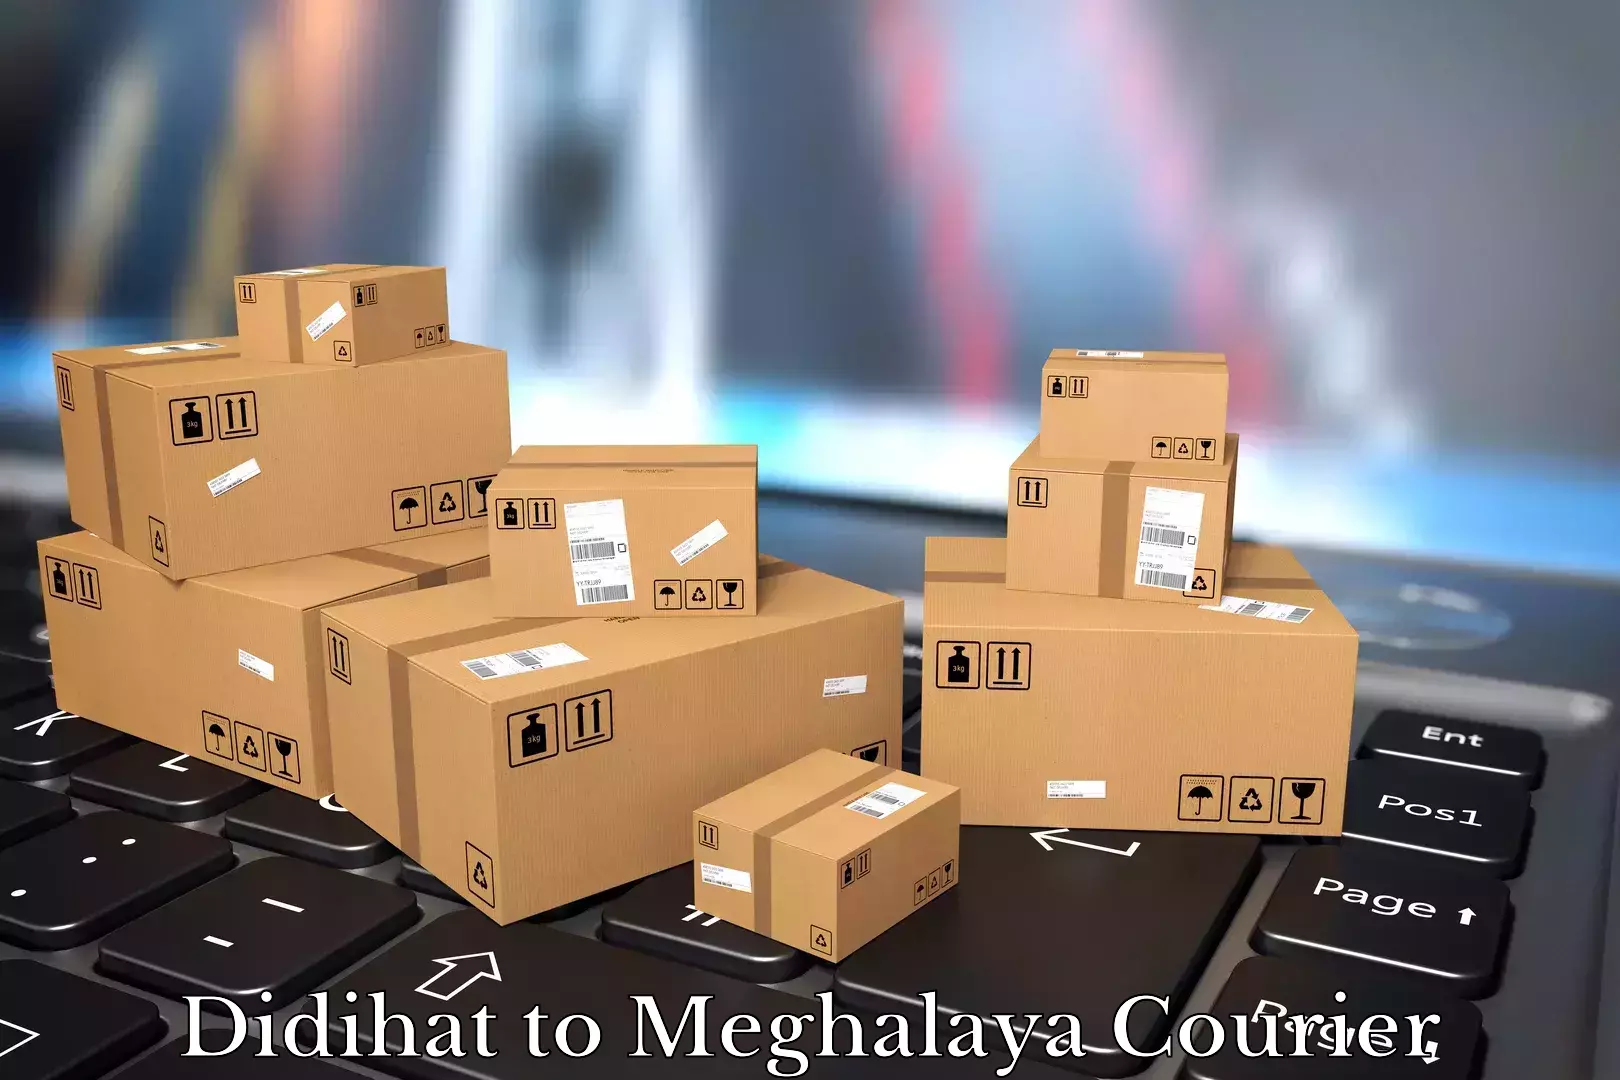 Furniture moving experts Didihat to Meghalaya